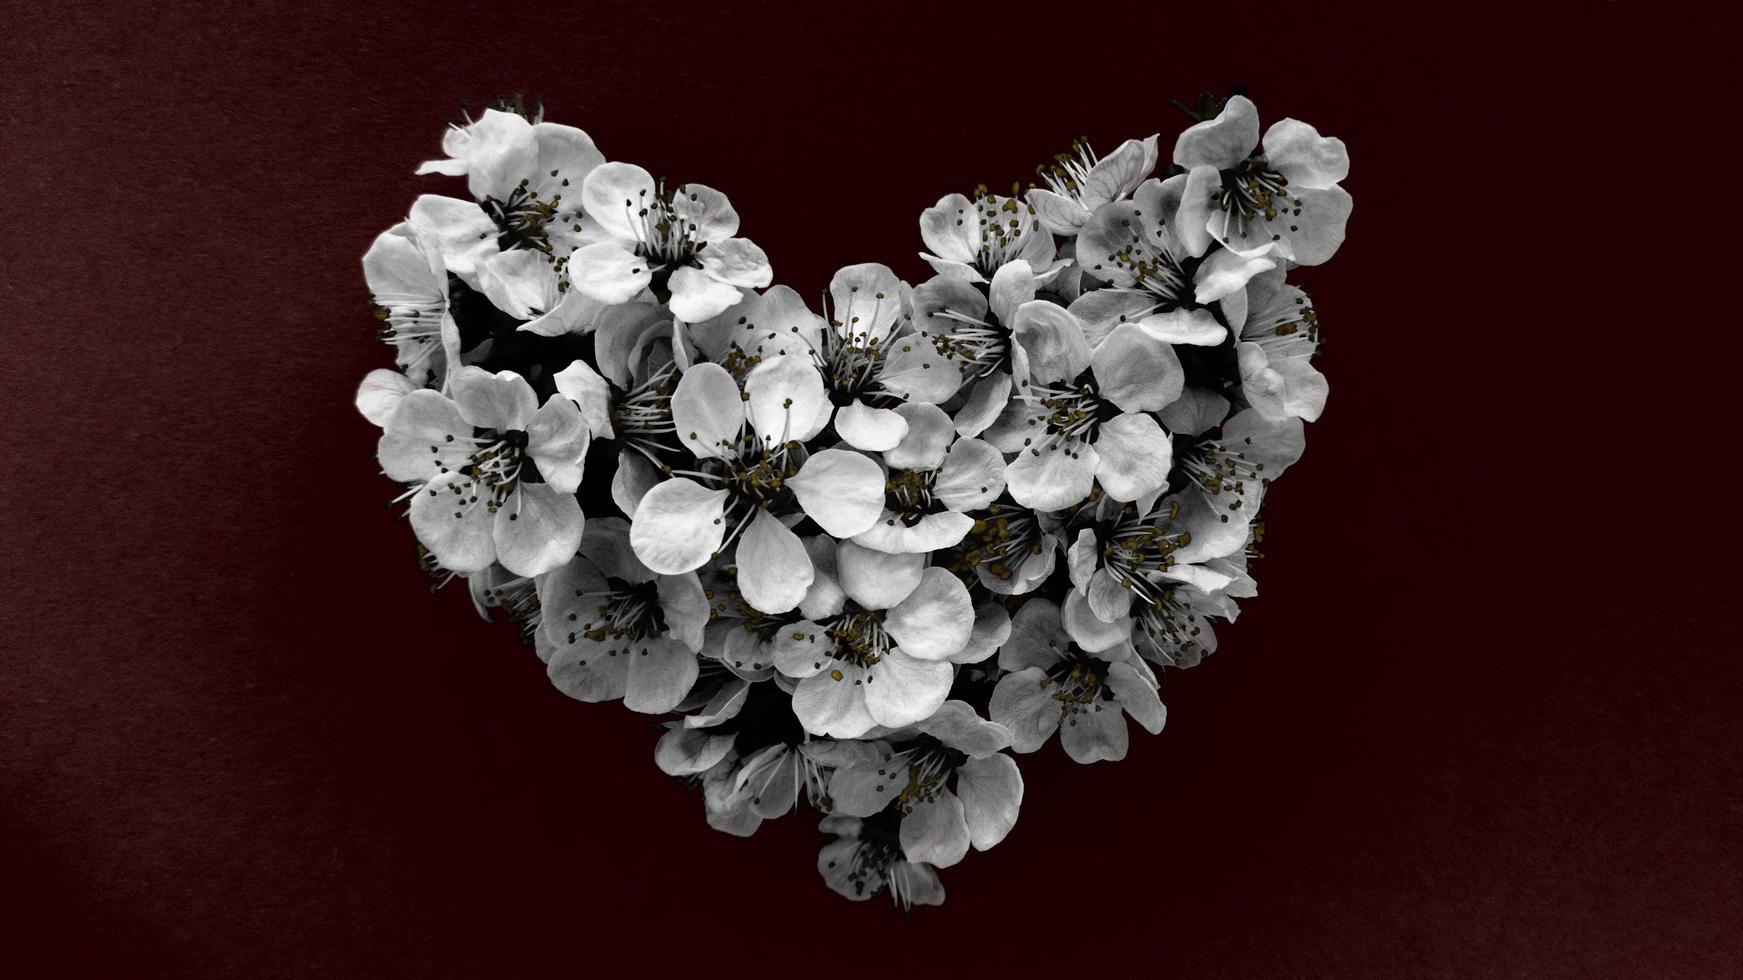 hart van pruimenboom bloemen in zwart-wit kleuren op donkerrode achtergrond. kan worden gebruikt als banner, briefkaart, fotoafdruk, uitnodigingsontwerp. Stock foto. foto